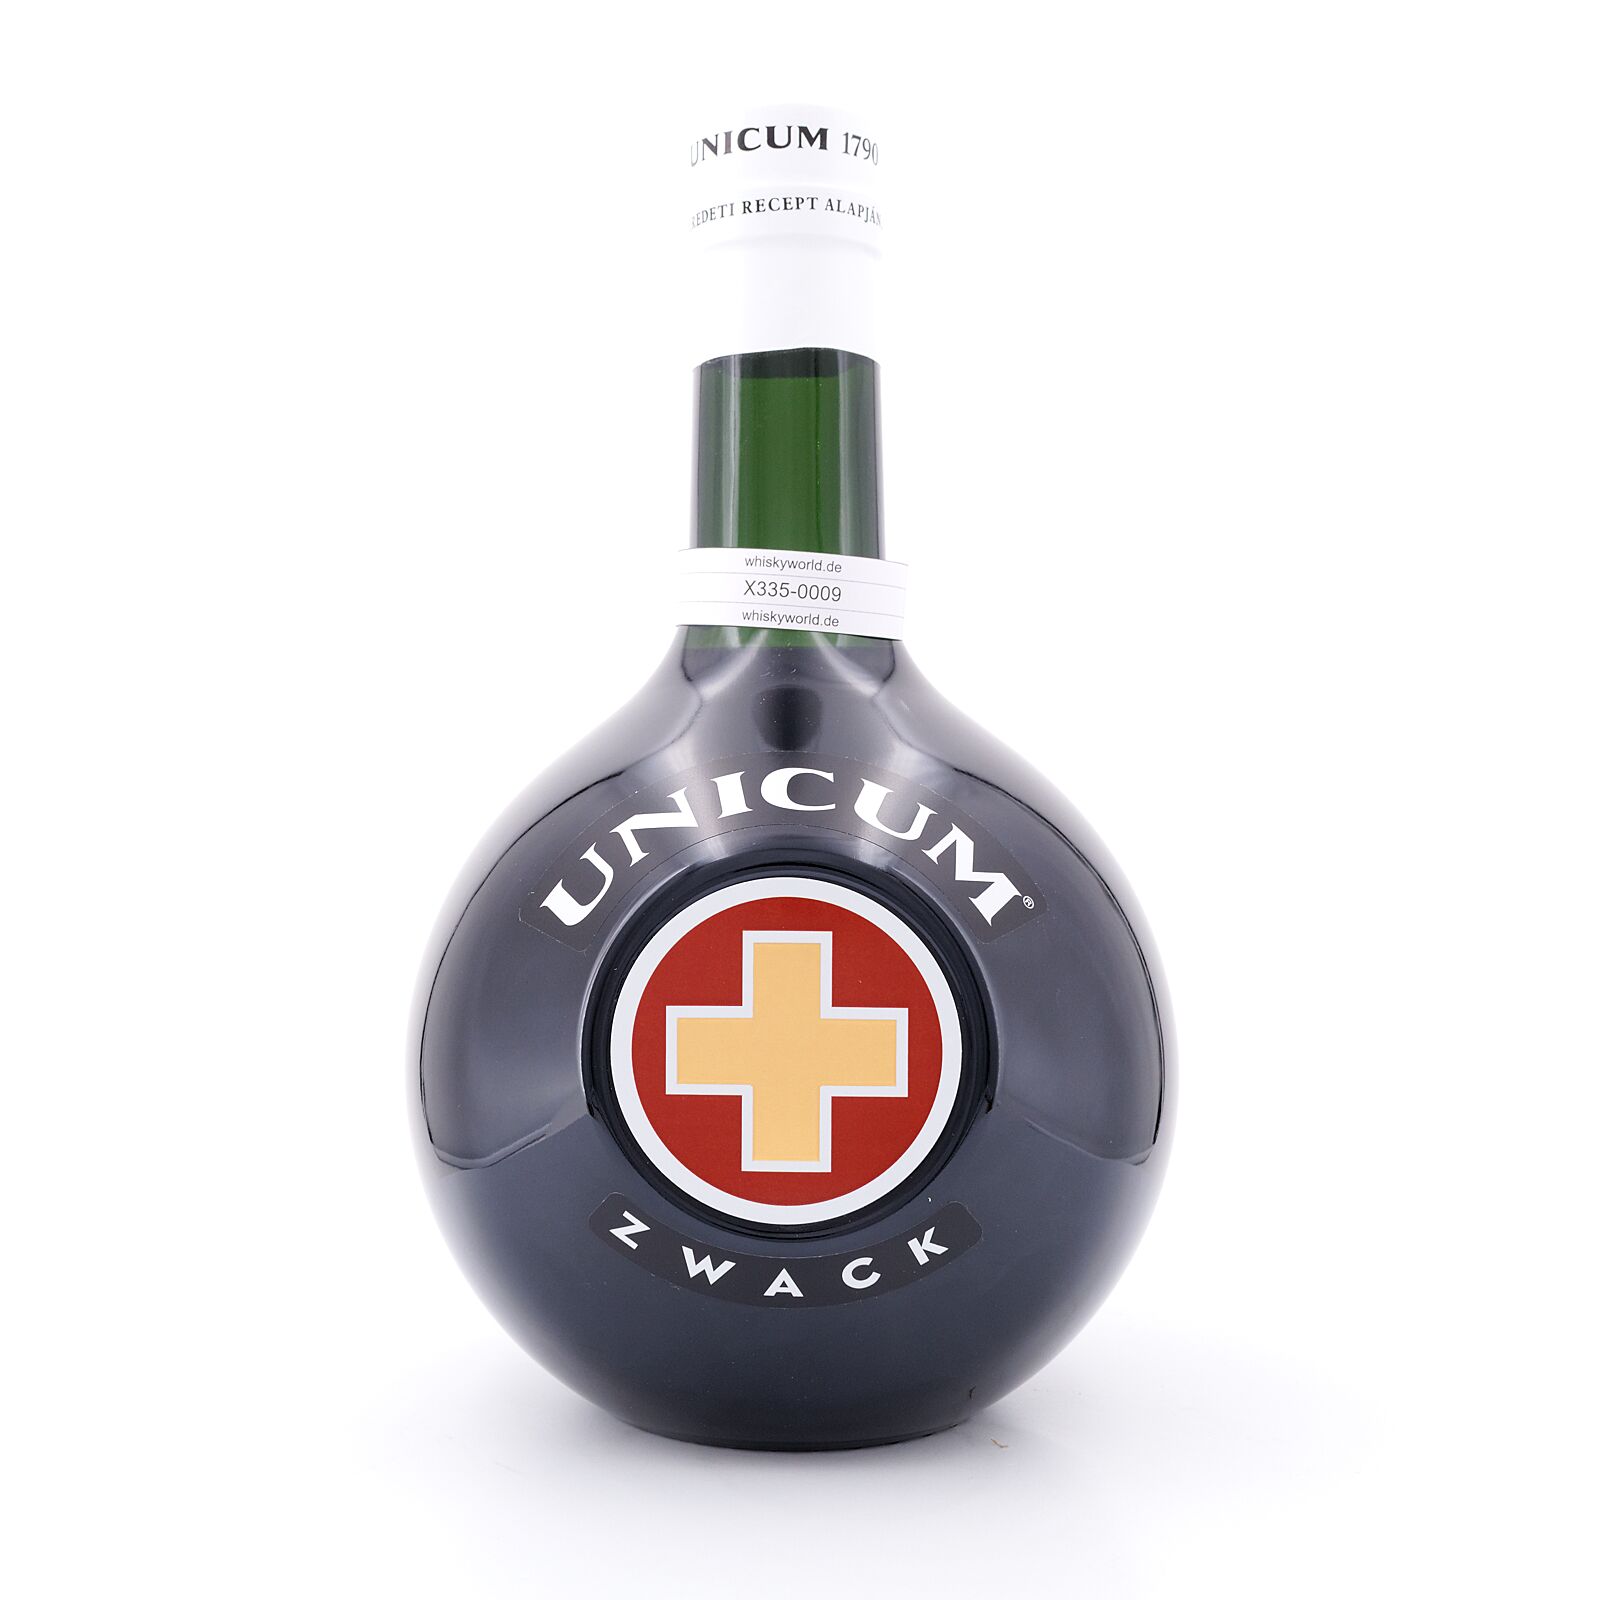 Zwack Unicum Kräuterlikör 3 Liter Flasche 3 Liter/ 40.0% vol